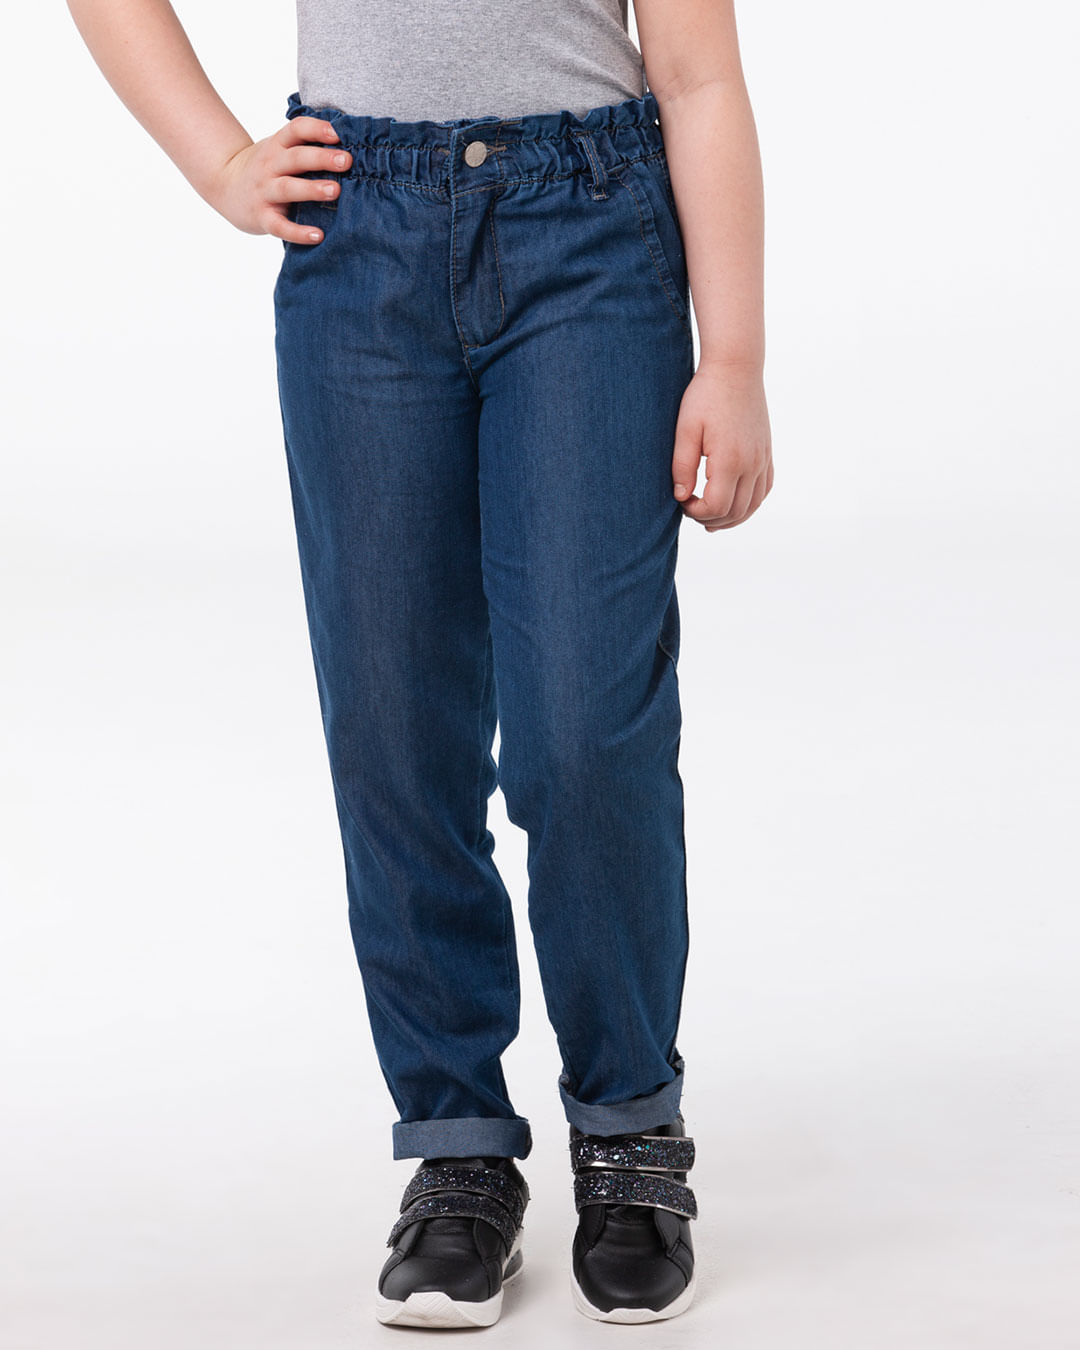 Calca-Jeans-Infantil-Elastico-Franzido-Azul